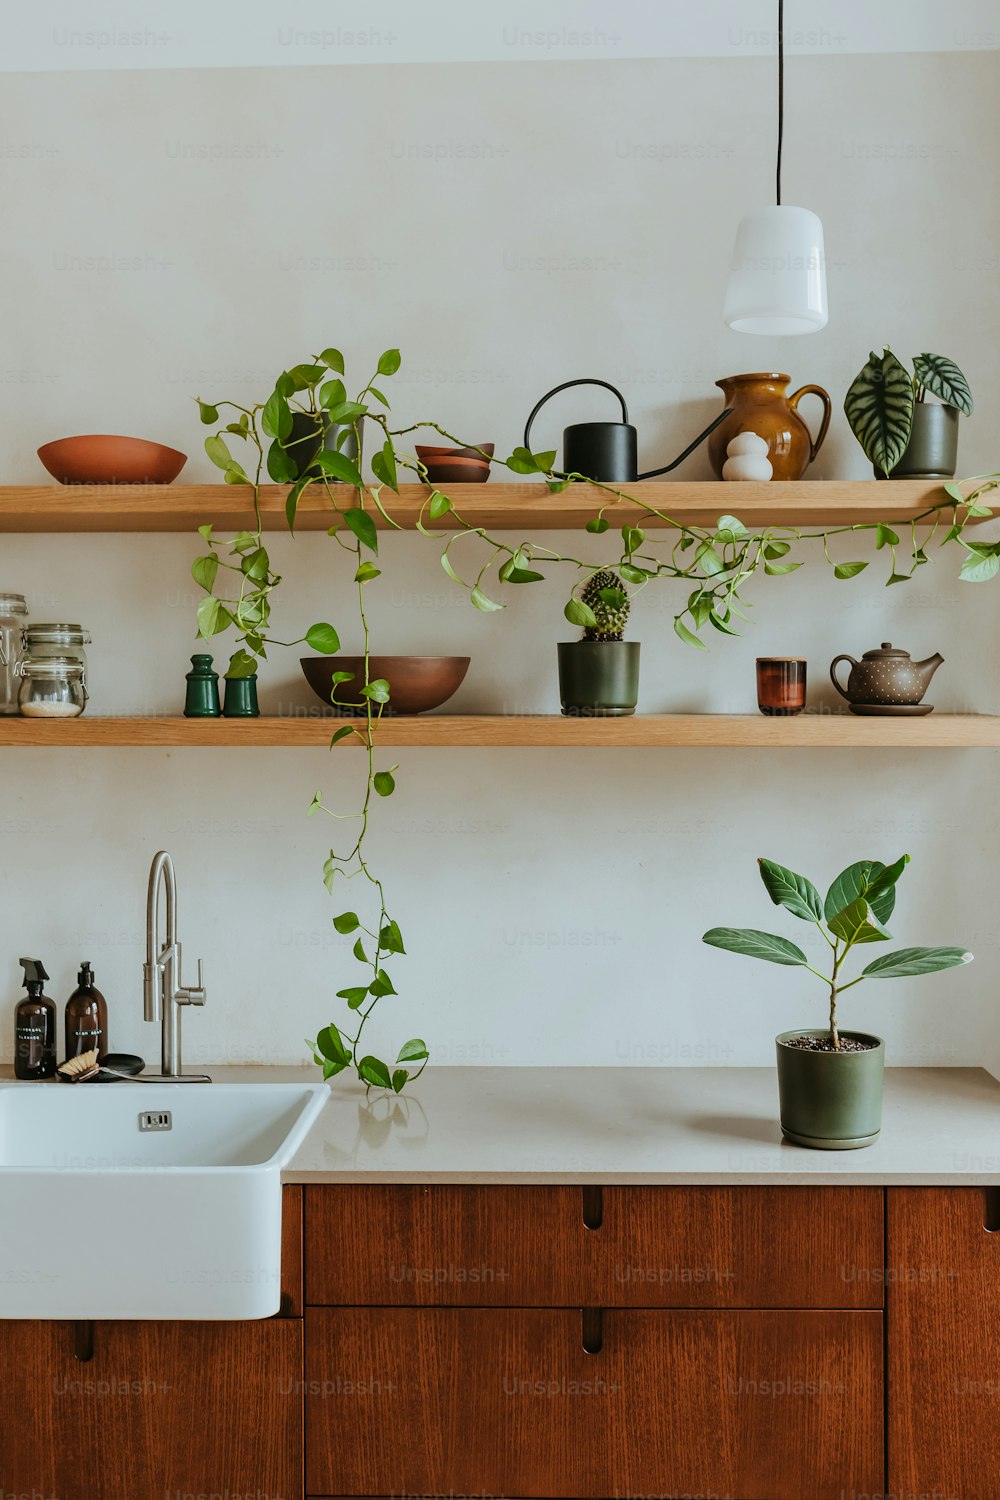 シンクと植物でいっぱいの棚のあるキッチン